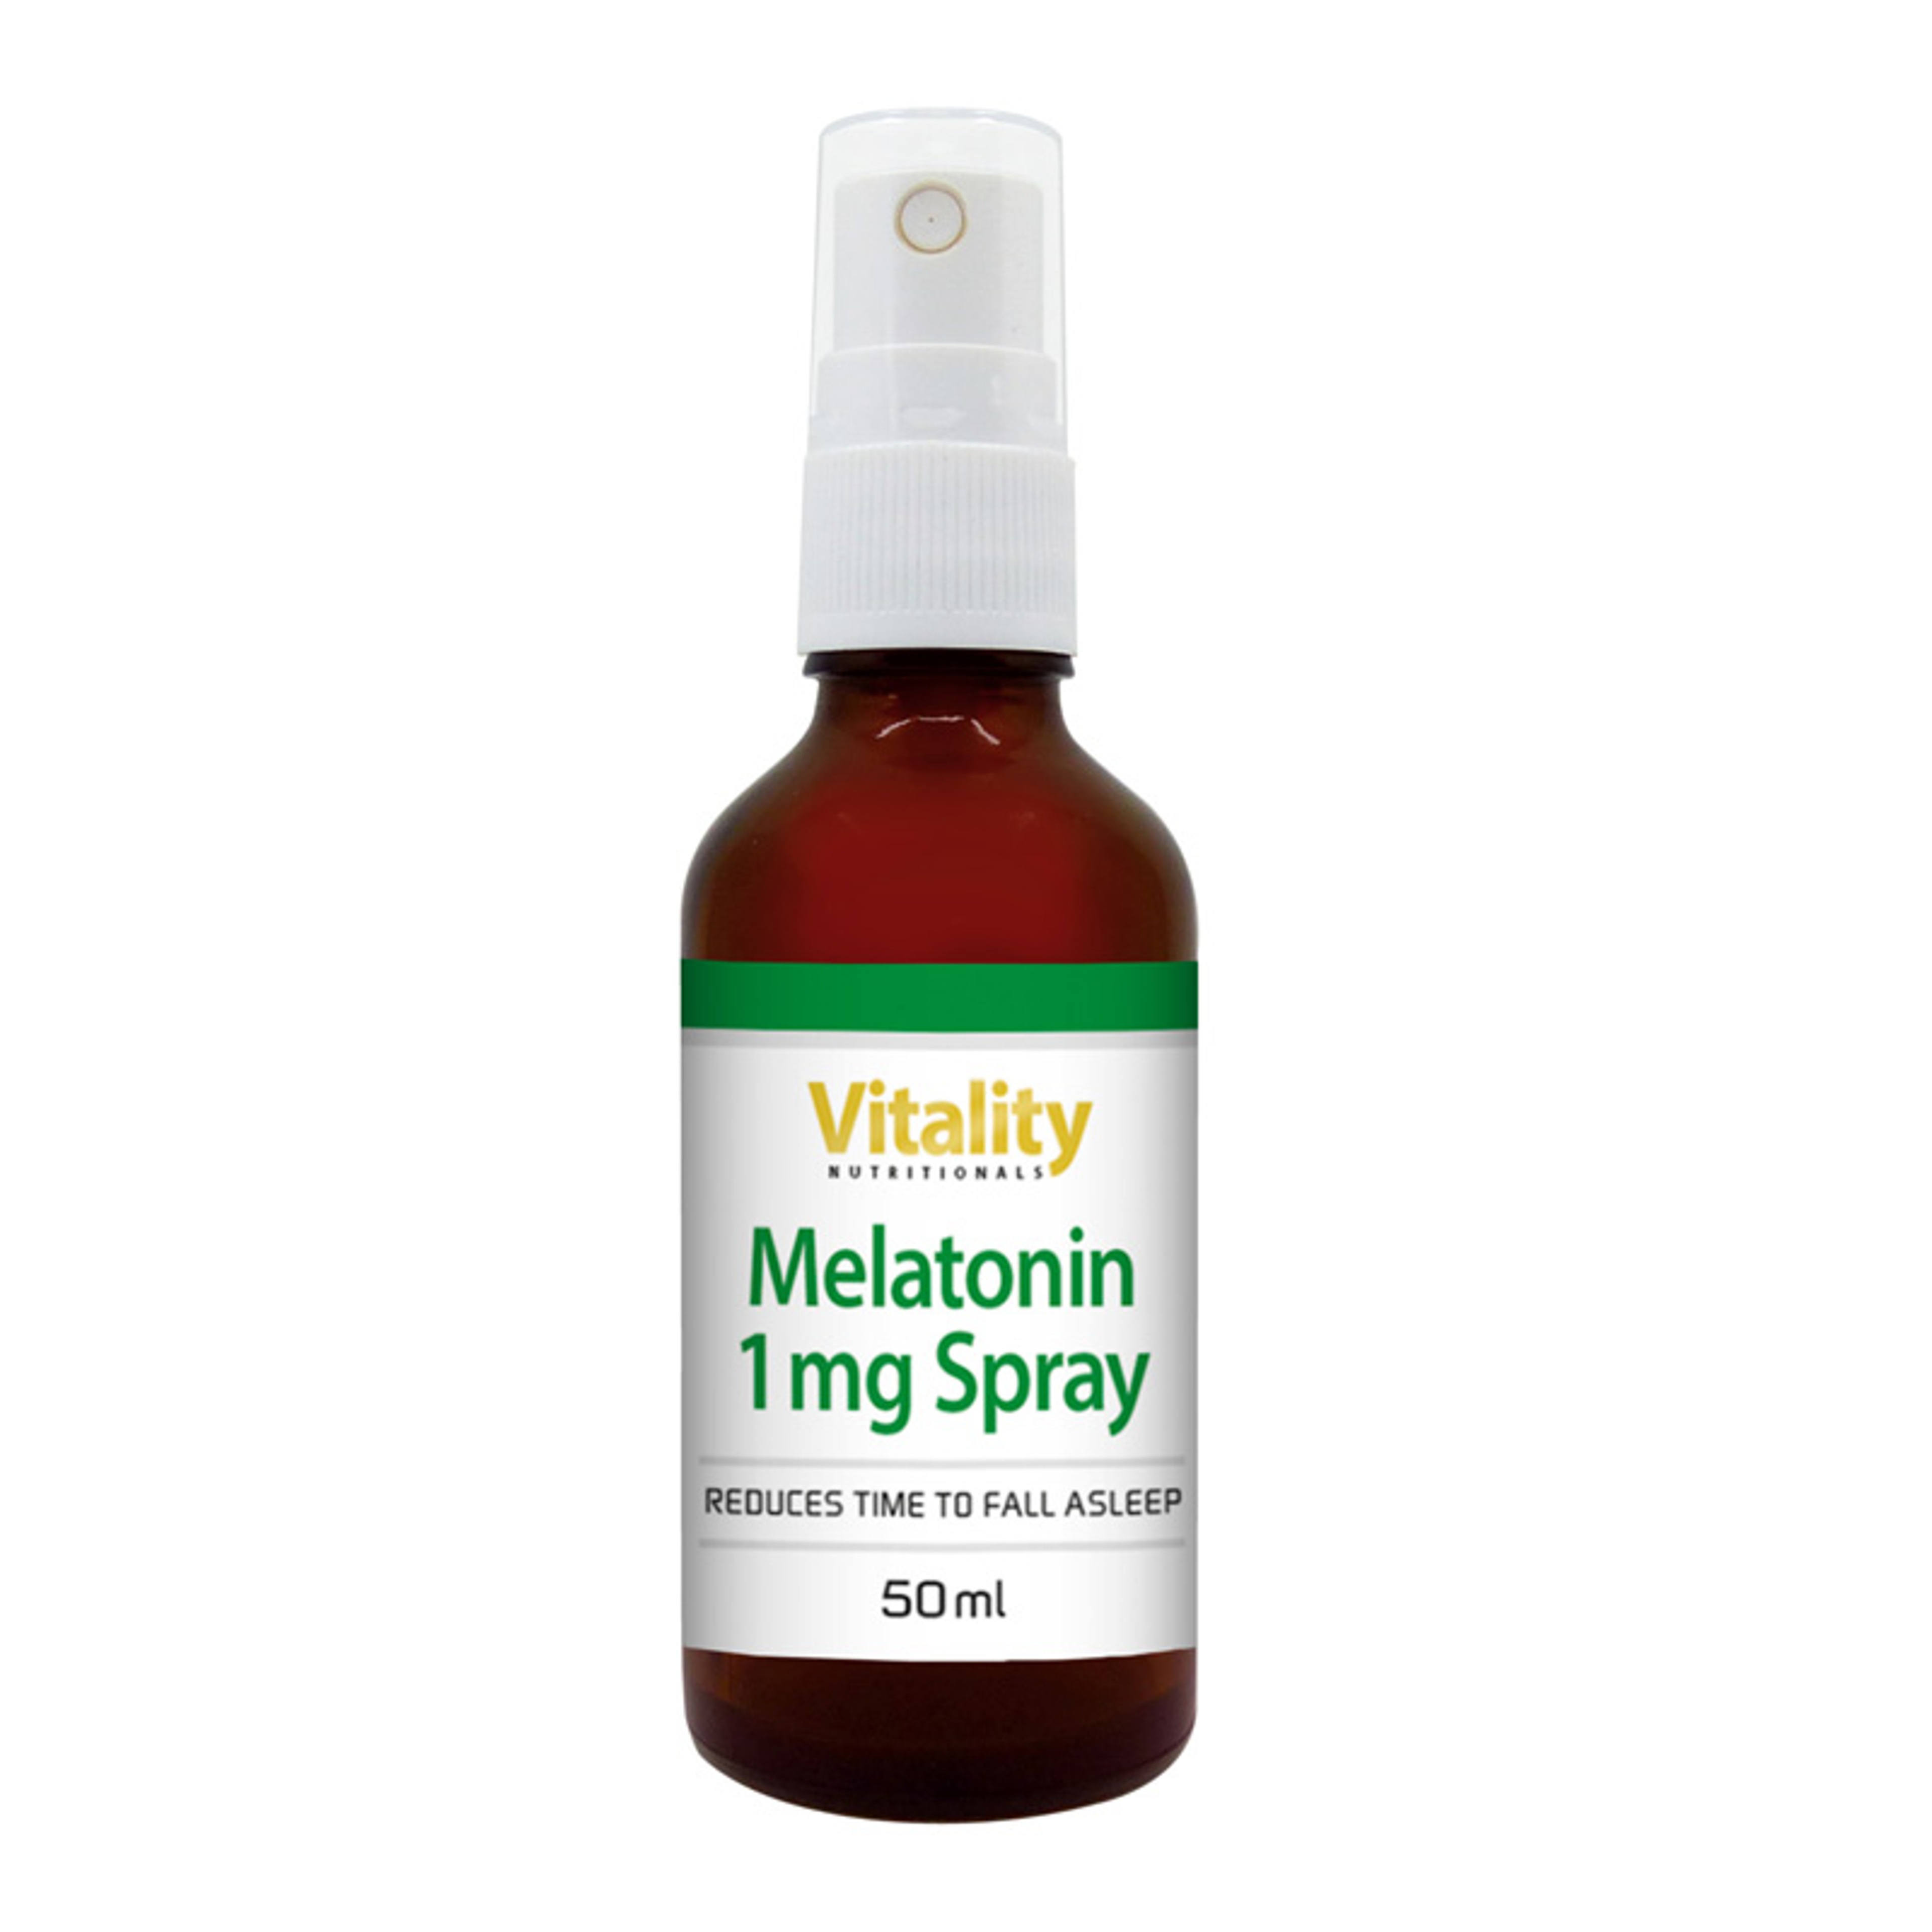 Melatonin-Spray-1mg_50ml_Packshot-Spray_800x800px_72dpi_20230316.jpg